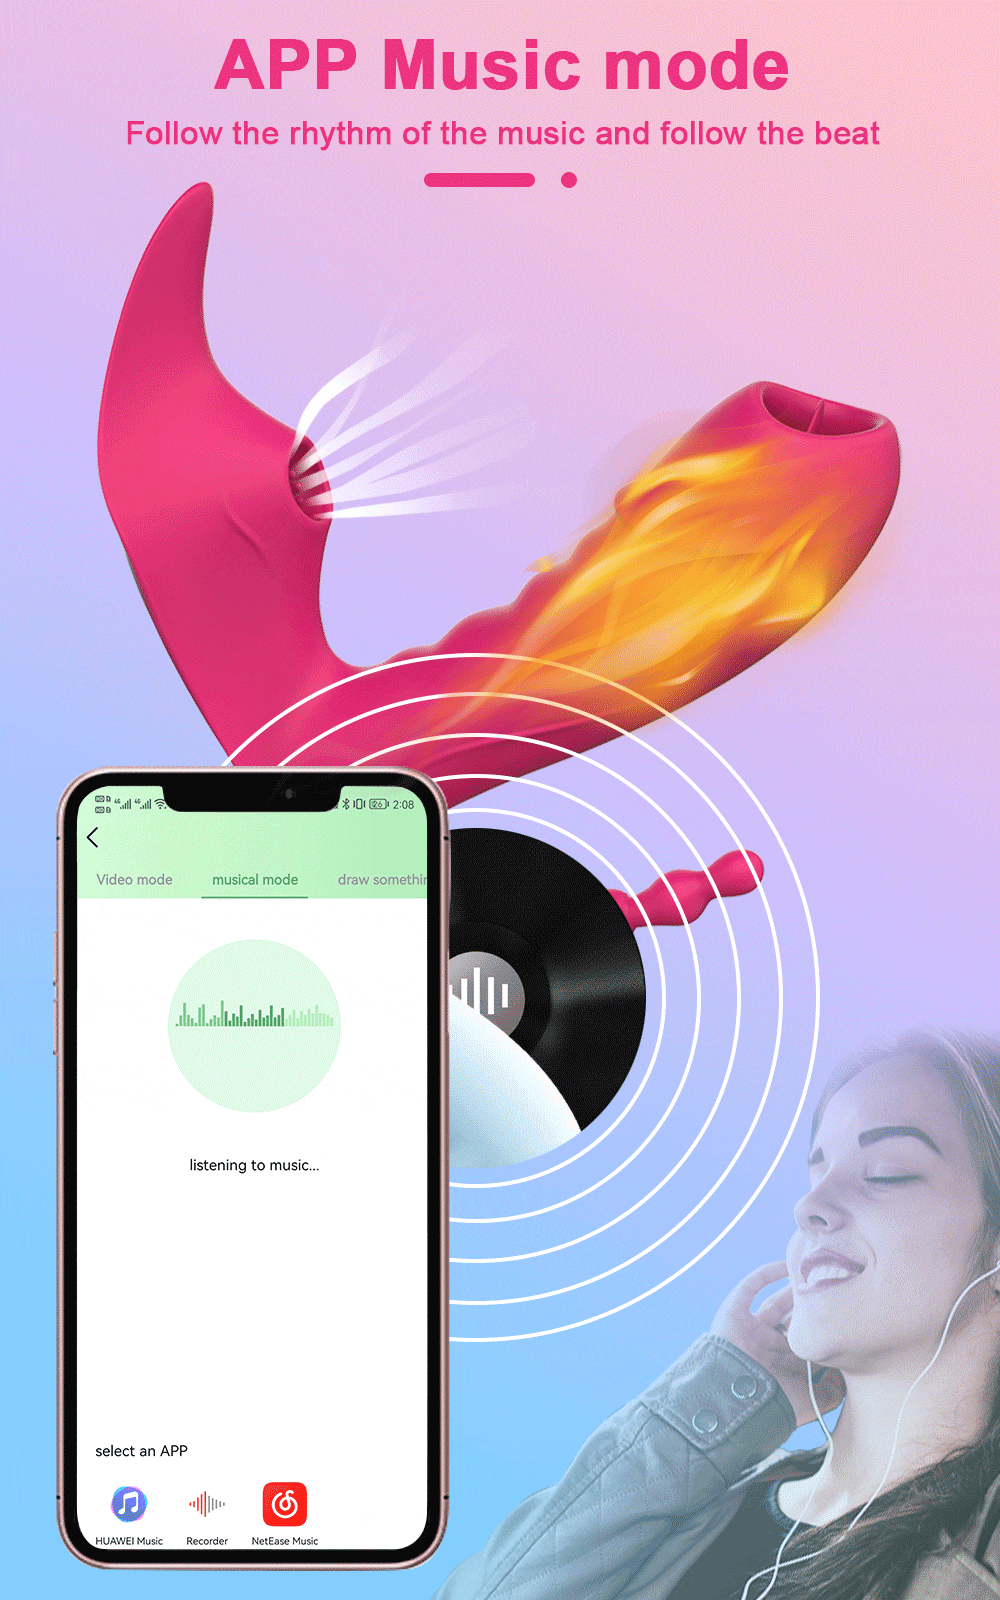 Phân phối Dương vật giả 3 trong 1 Love Spouse rung liếm hút kết nối Bluetooth điều khiển qua app giá rẻ